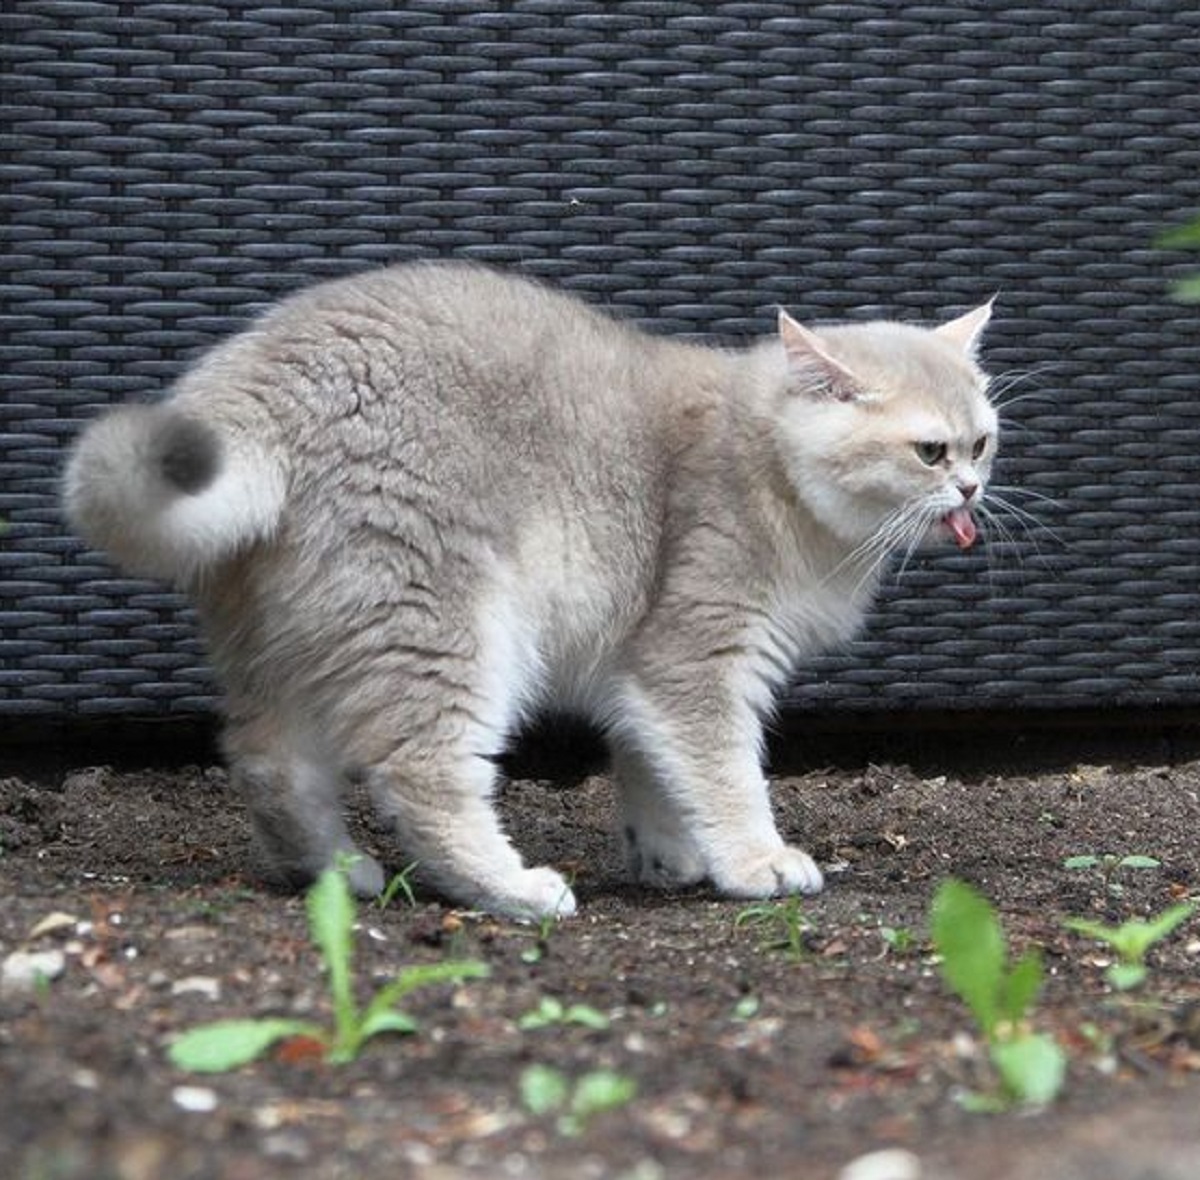 Halaman Rumah Sering Di Datangi Kucing Untuk Buang Air? Yuk Simak 6 Tips Mengusir Kucing Agar Tidak Kembali 